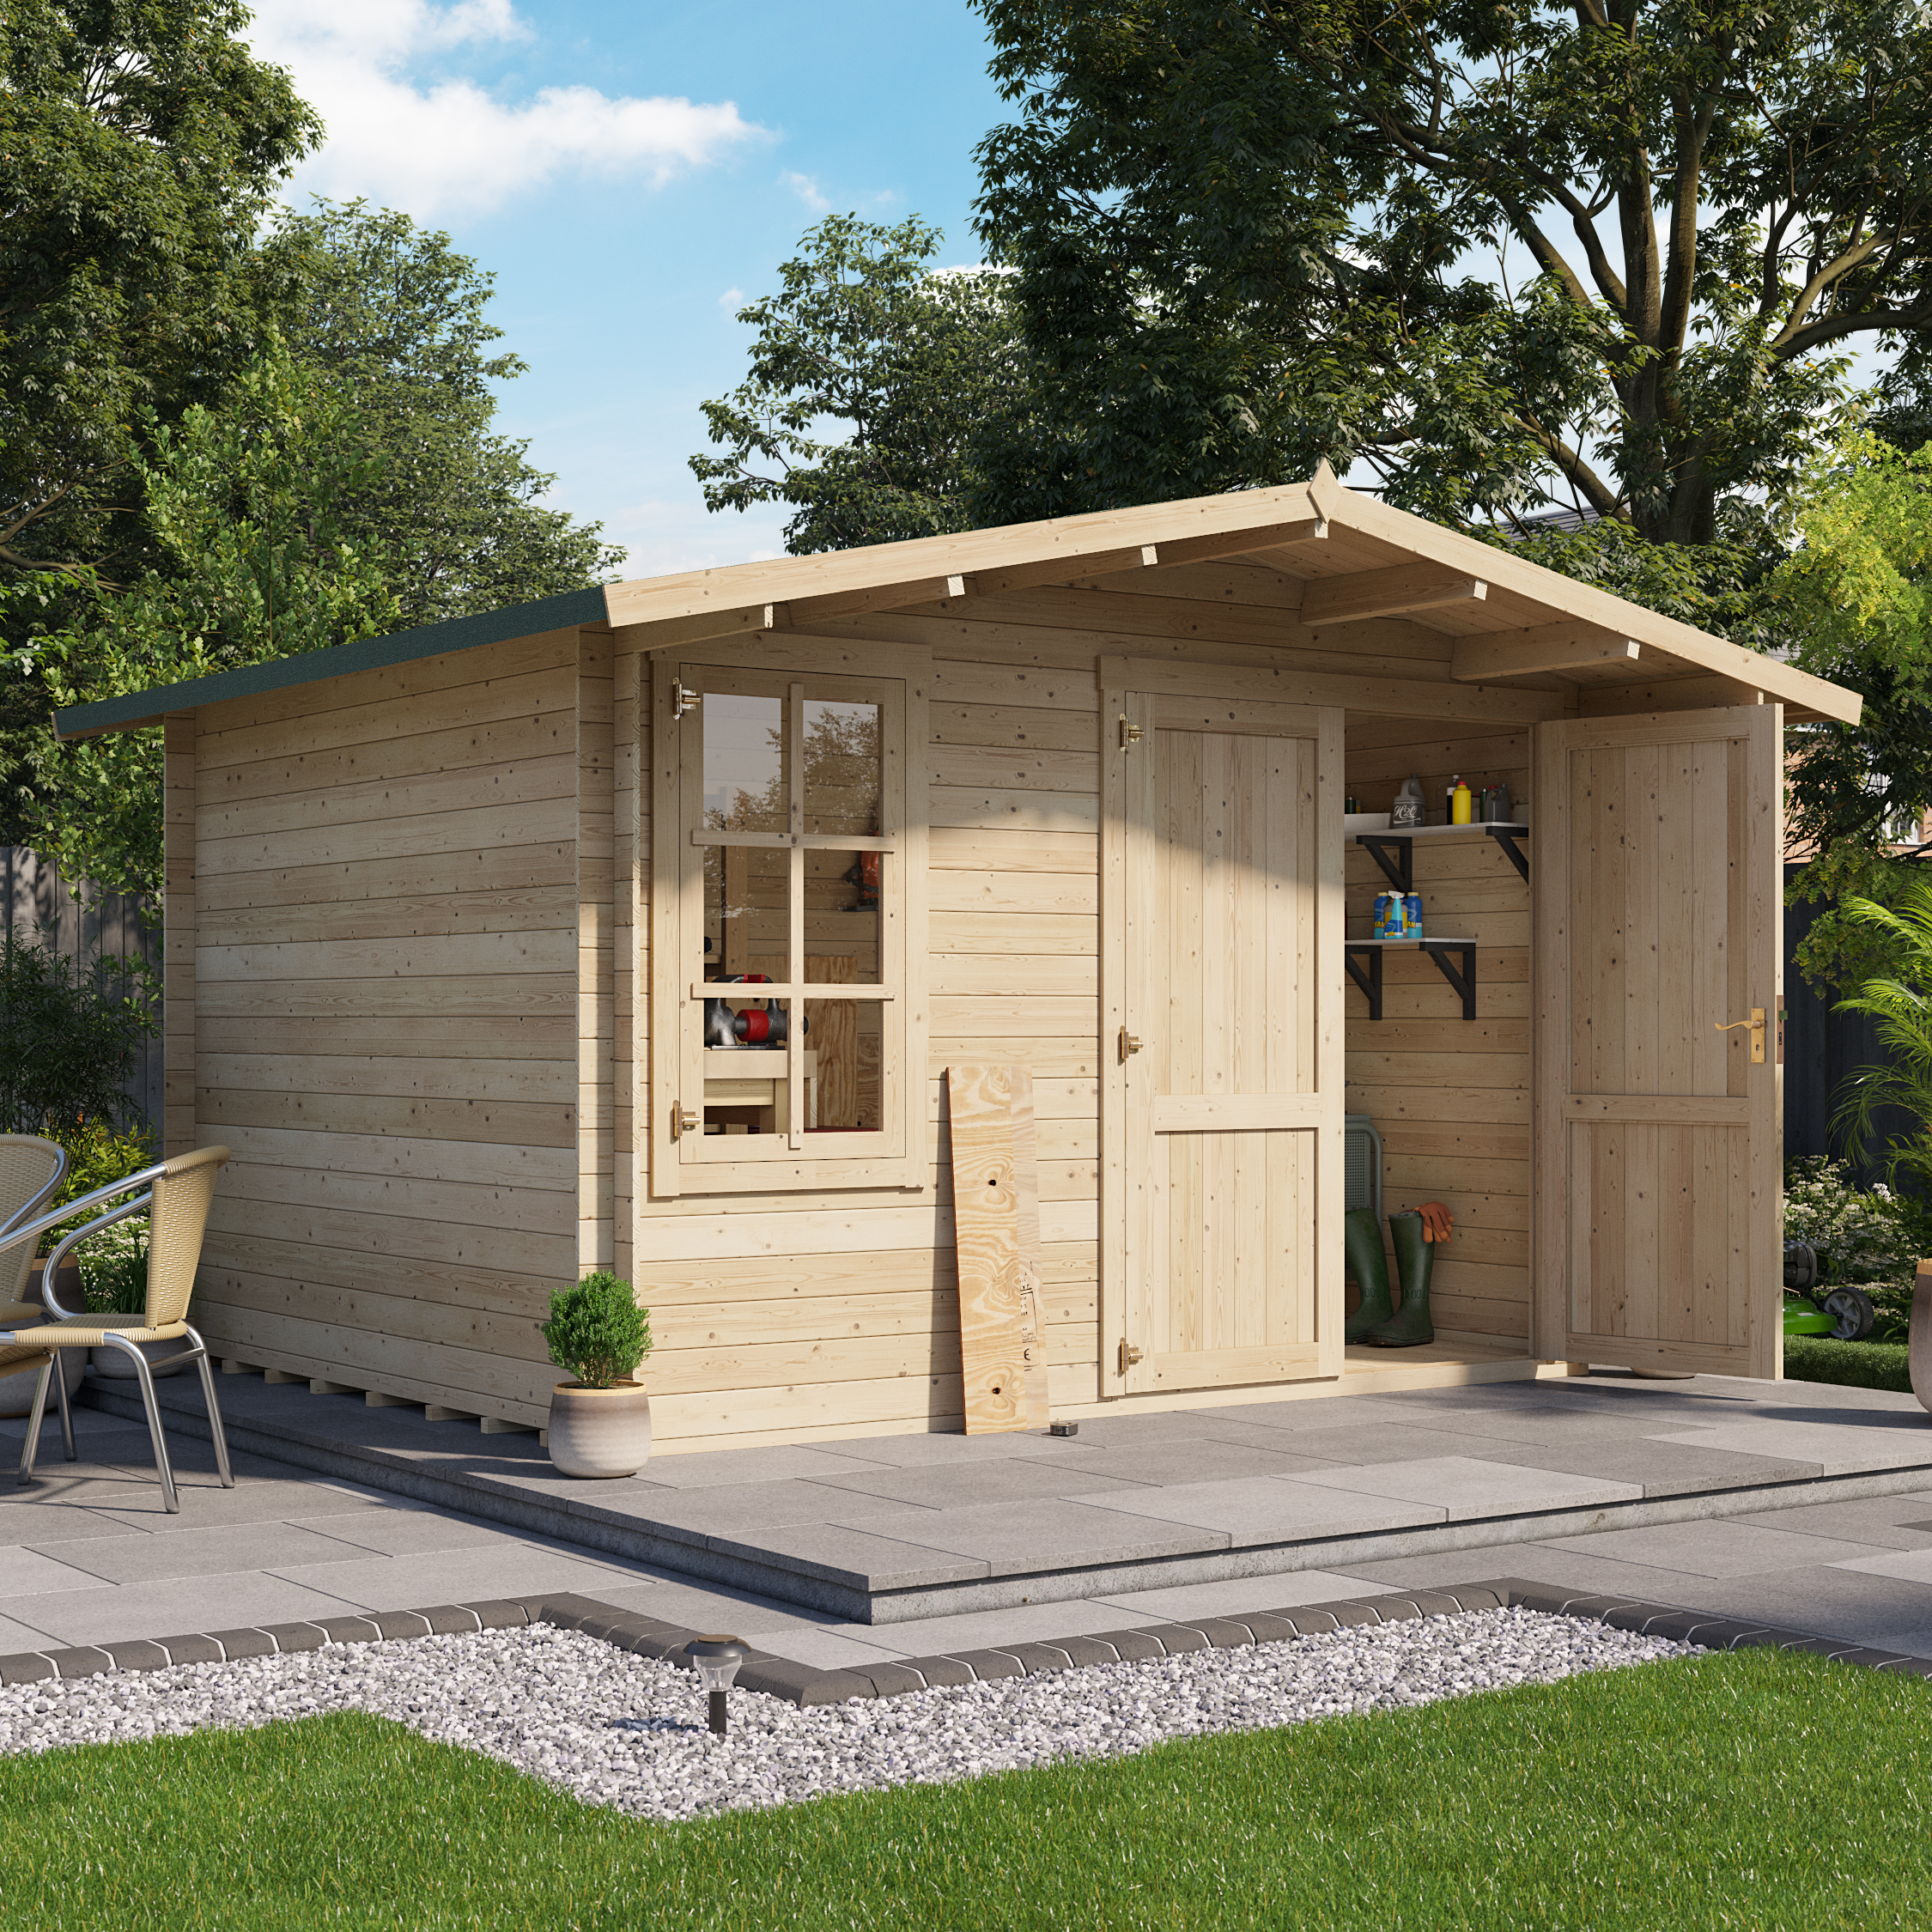 3.5 x 3.5 Log cabin - BillyOh Alpine Workshop Log Cabin - W3.5 x D3.5 Wooden Garden Building